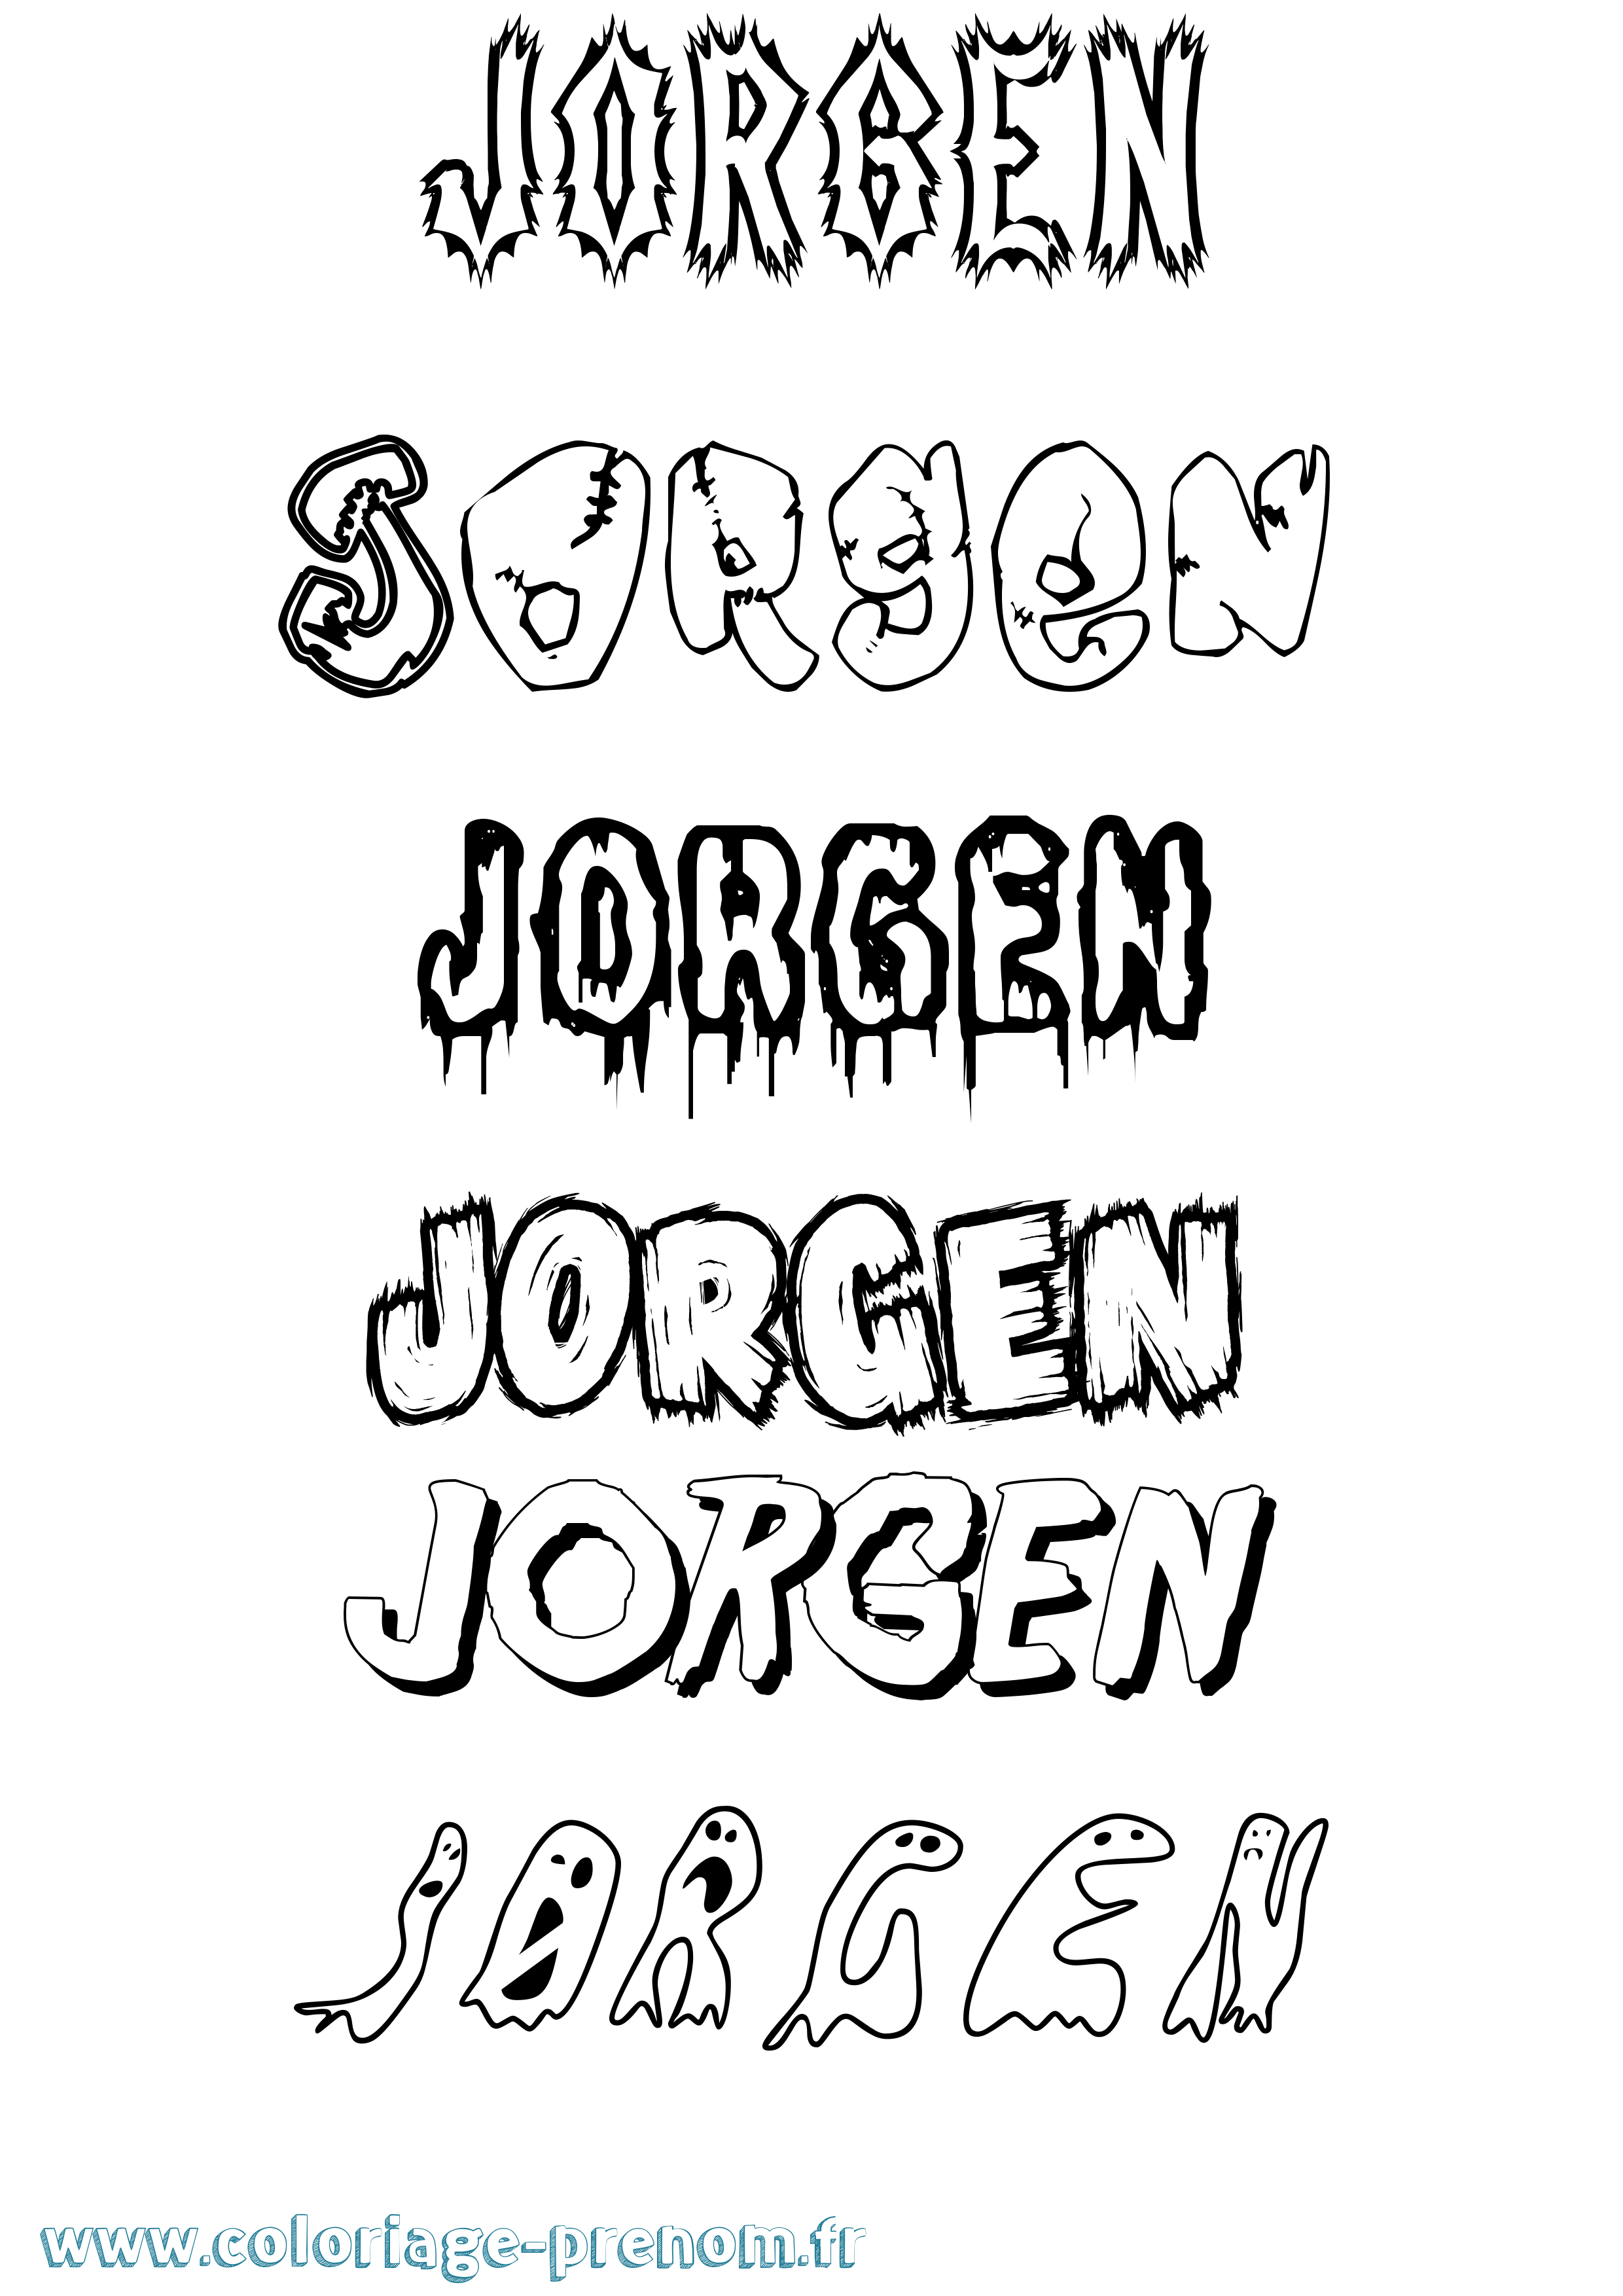 Coloriage prénom Jørgen Frisson